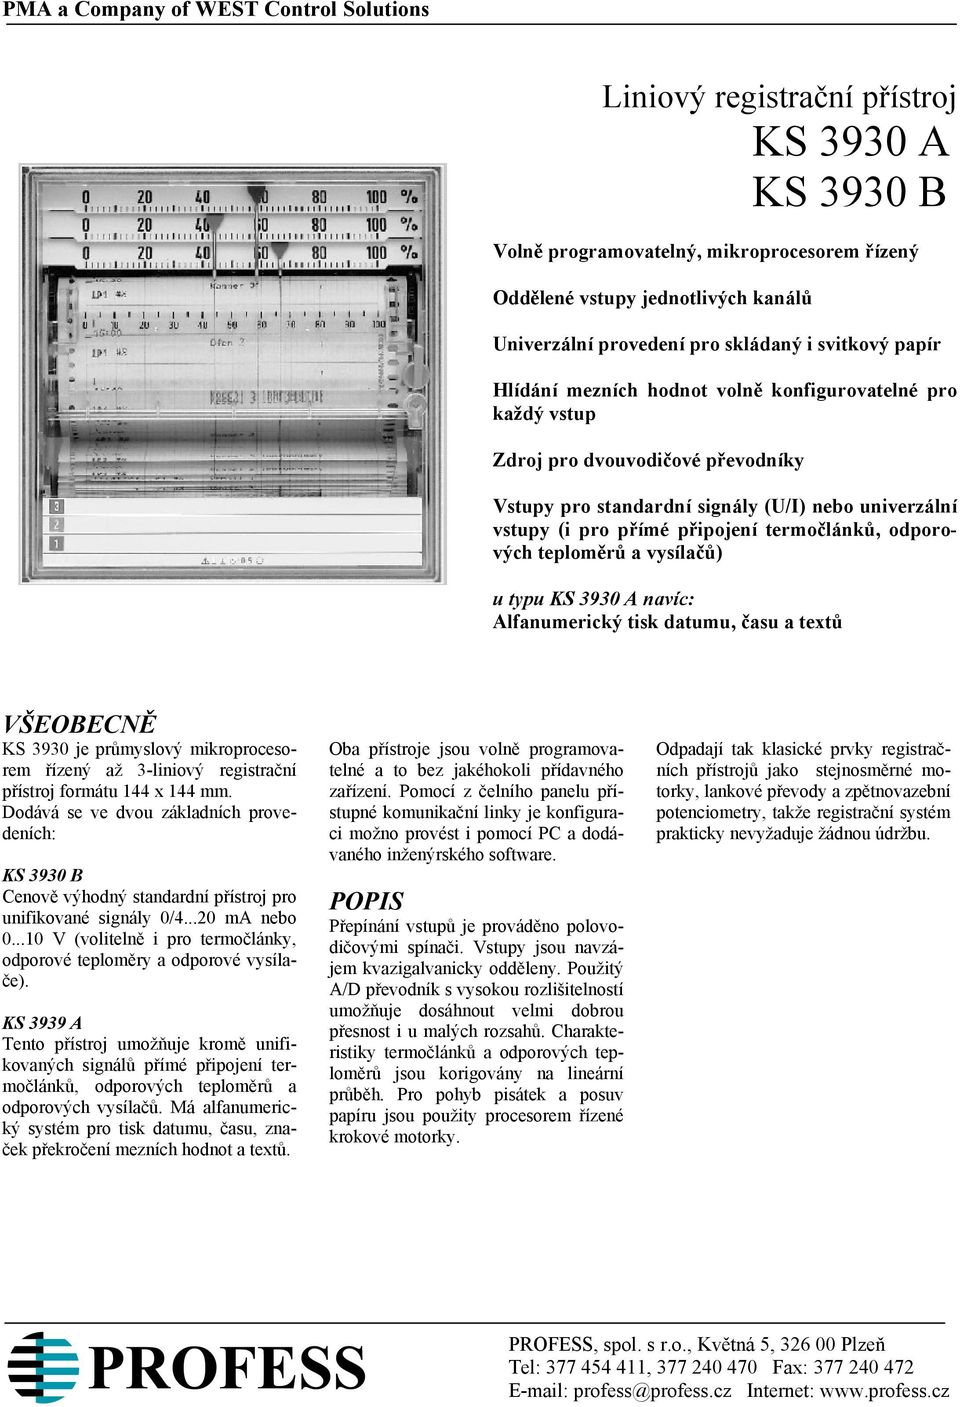 Liniový registrační přístroj KS 3930 A KS 3930 B - PDF Free Download